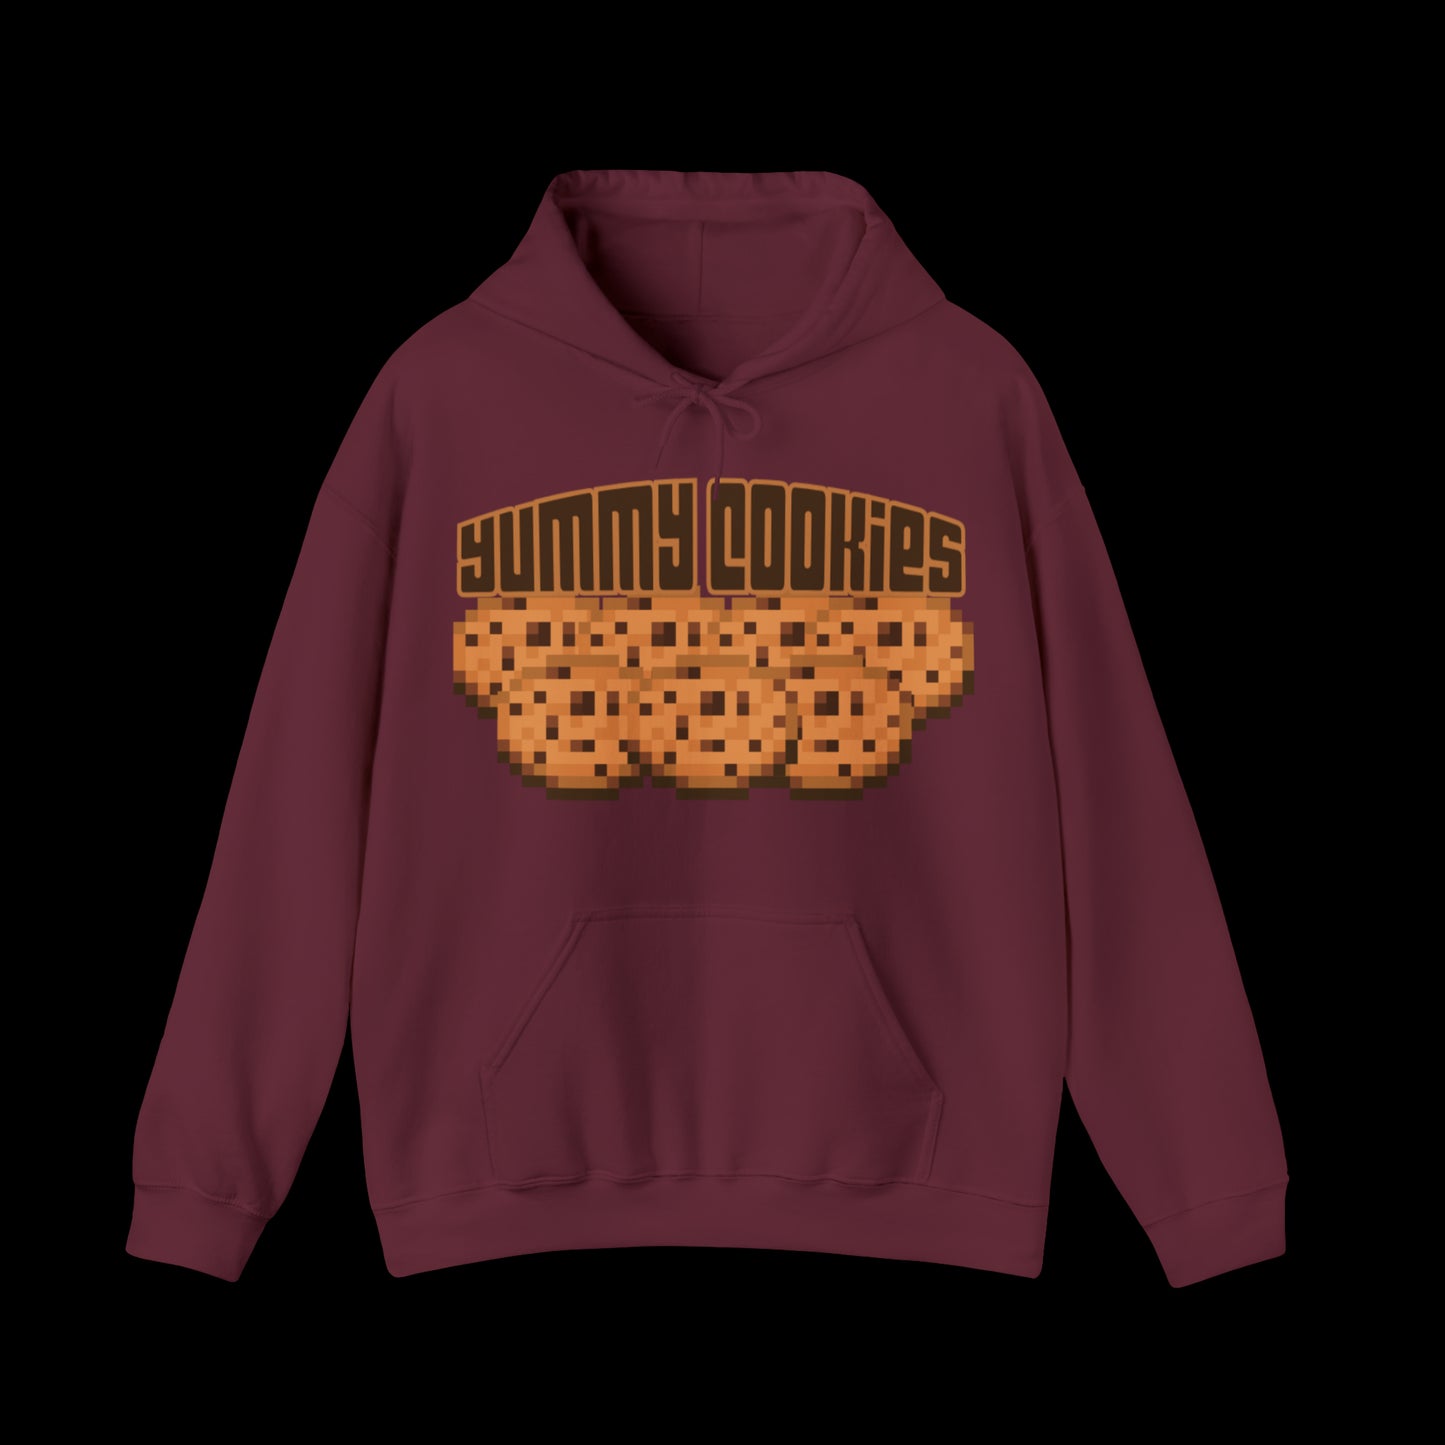 Yummy Cookies Hooded Sweatshirt